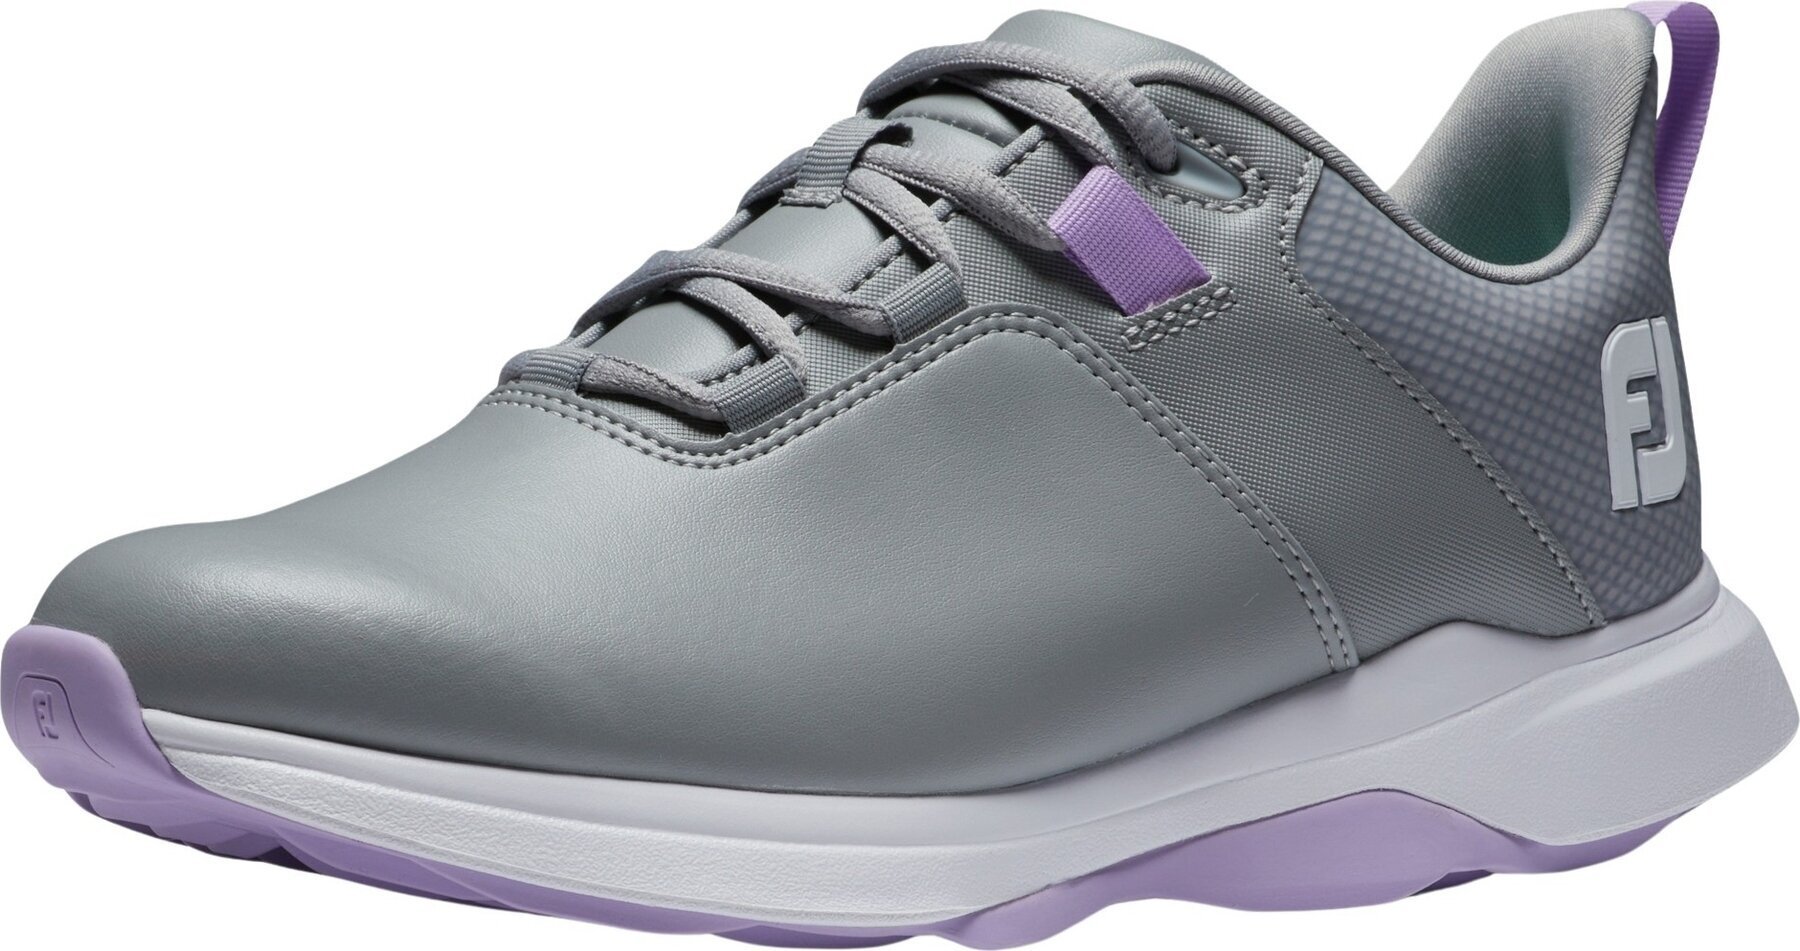 Chaussures de golf pour femmes Footjoy ProLite Womens Golf Shoes Grey/Lilac 37